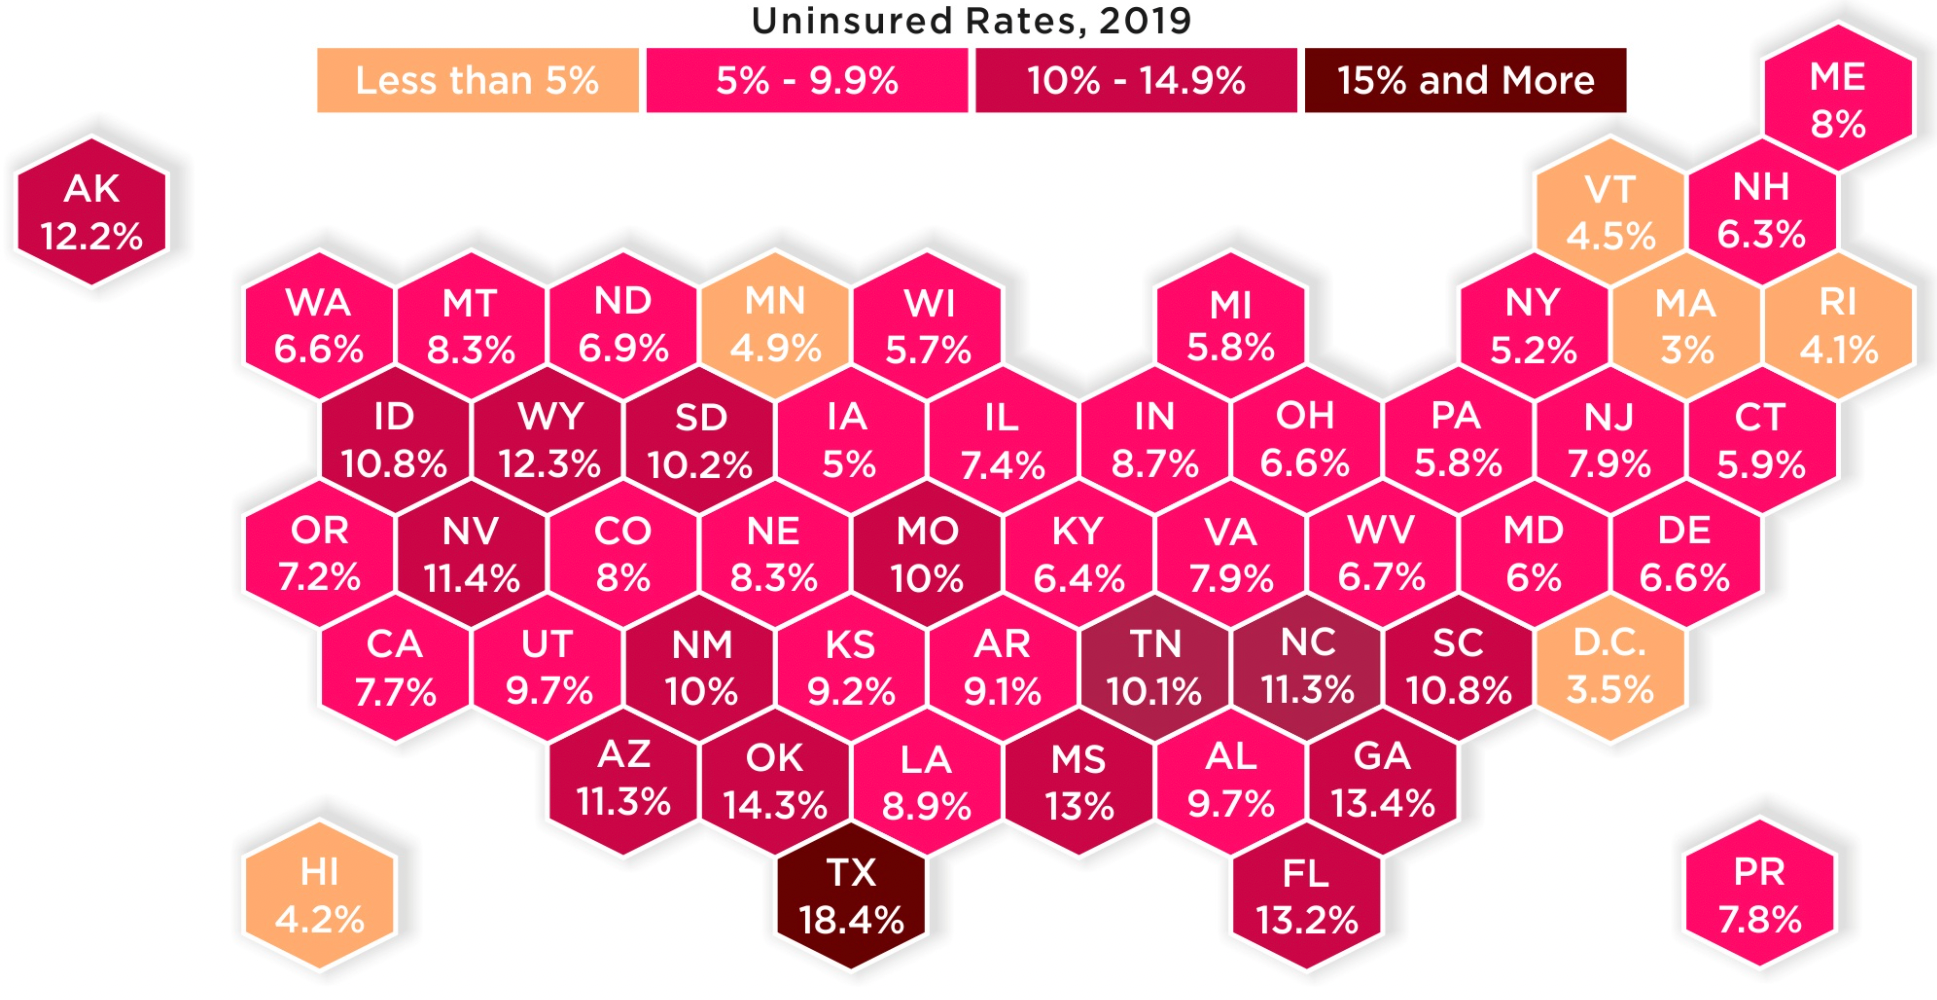 Процент населения без страховки в разных штатах США. Источник: HowMuch